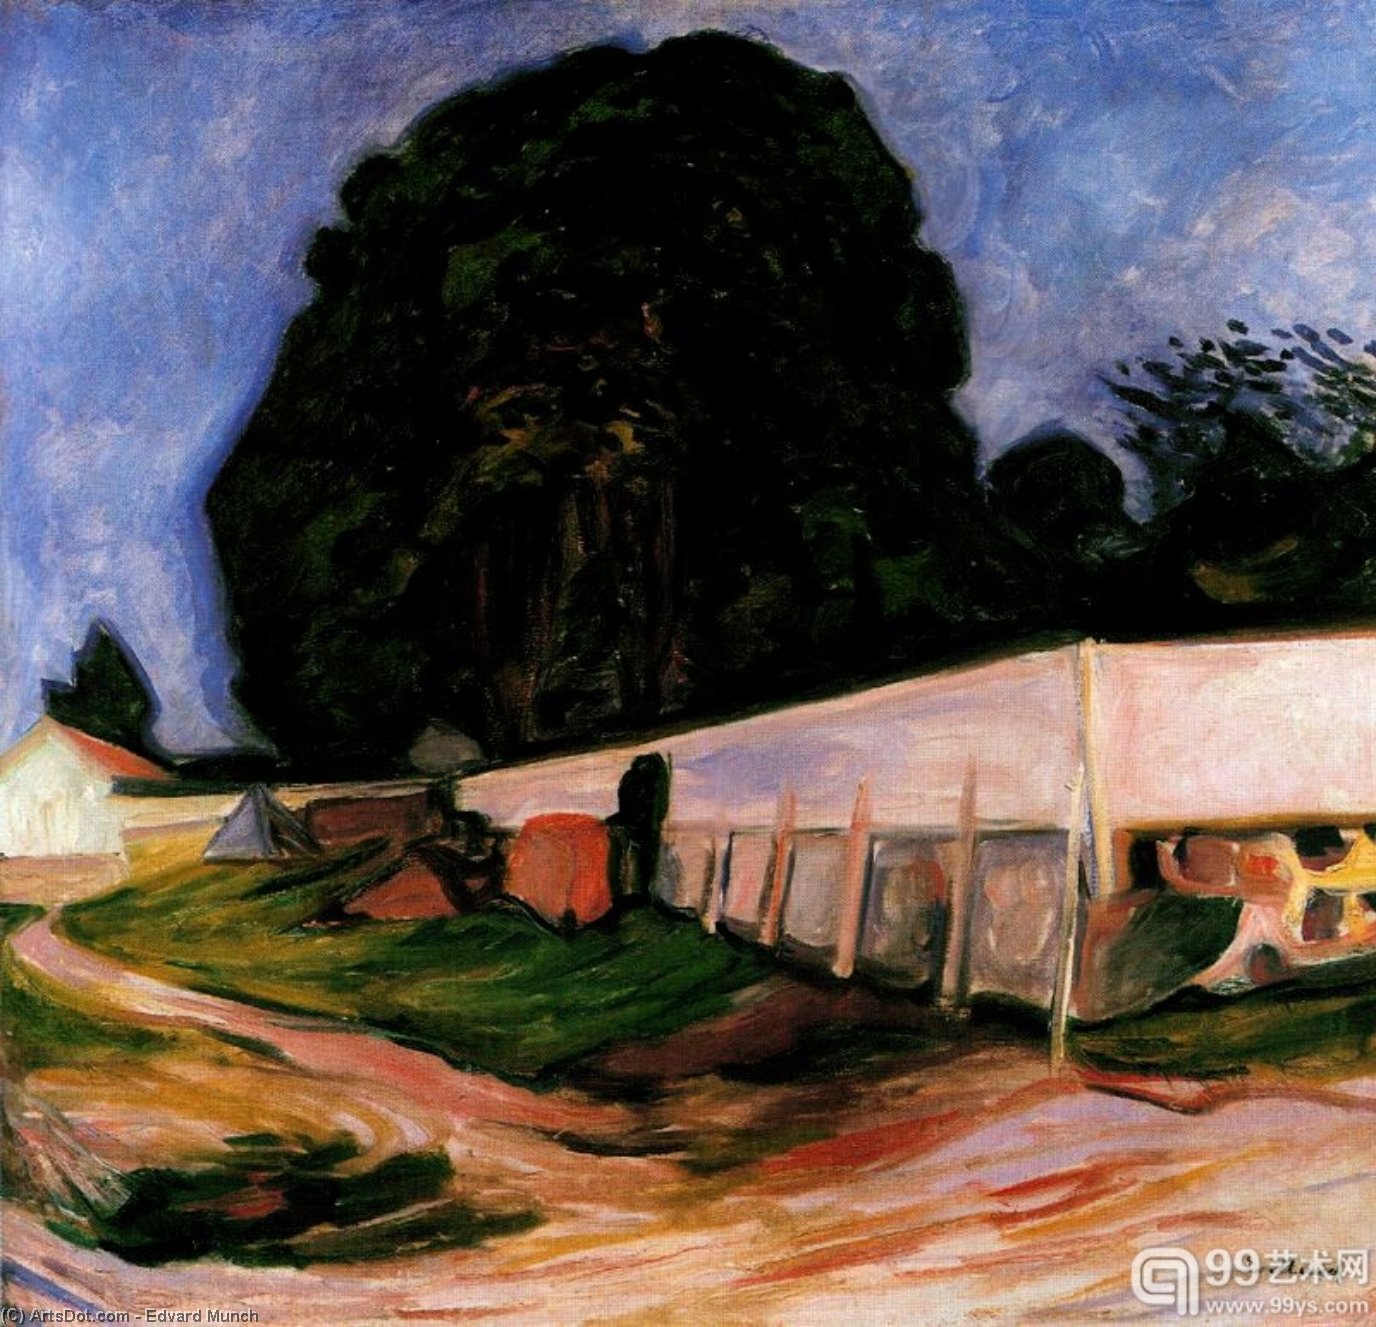 WikiOO.org - Encyclopedia of Fine Arts - Målning, konstverk Edvard Munch - untitled (7798)